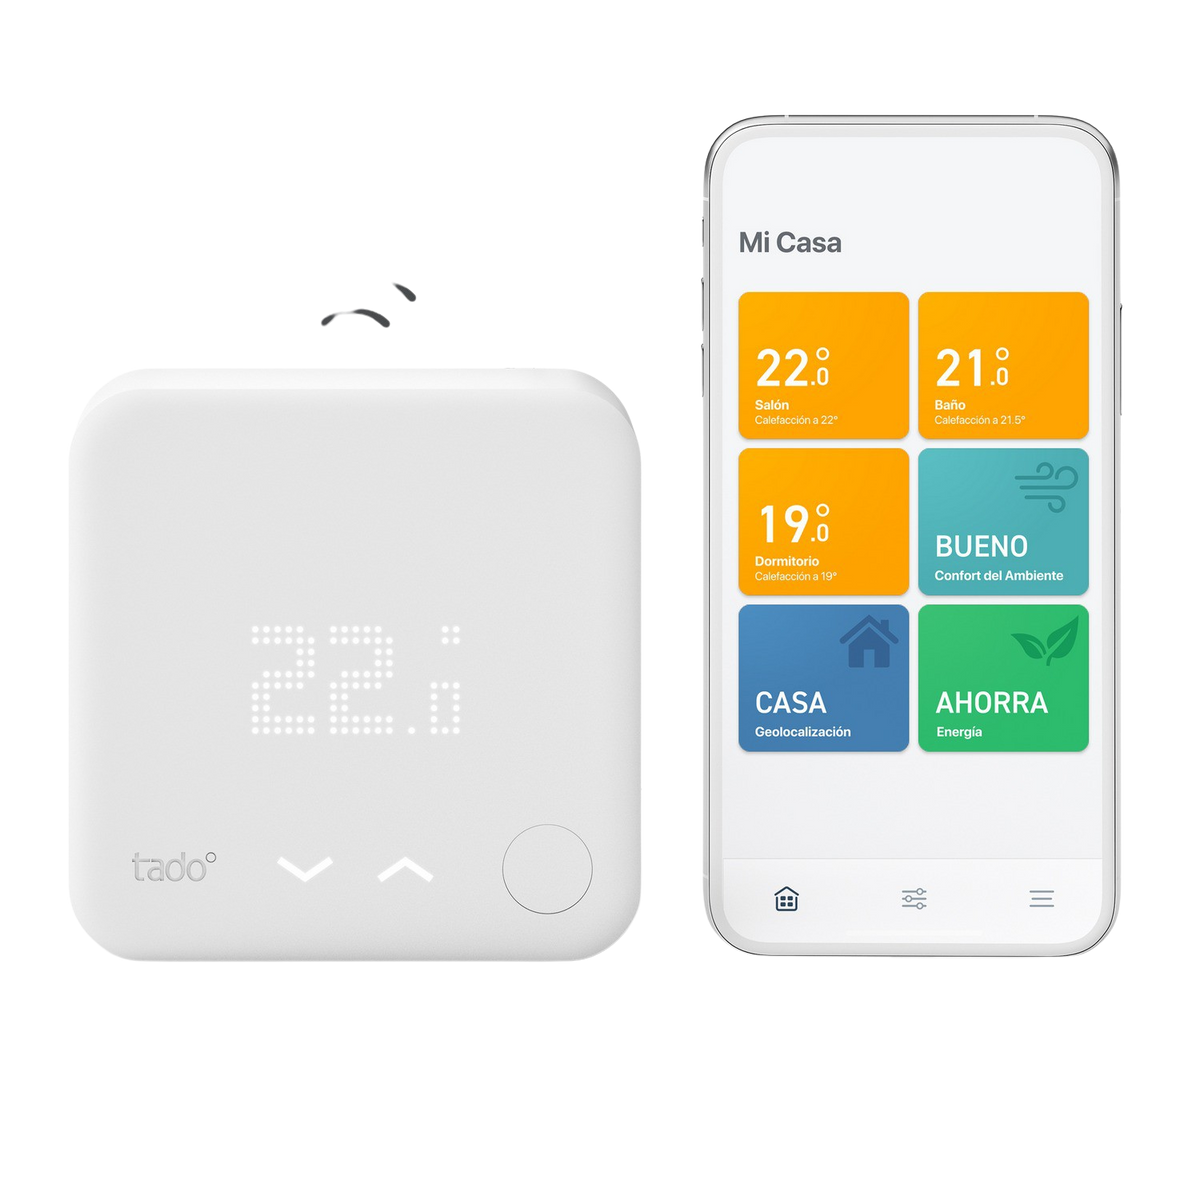 V3+ TADO Starter Kit Kit, Wireless Thermostat Smartes Starter weiß